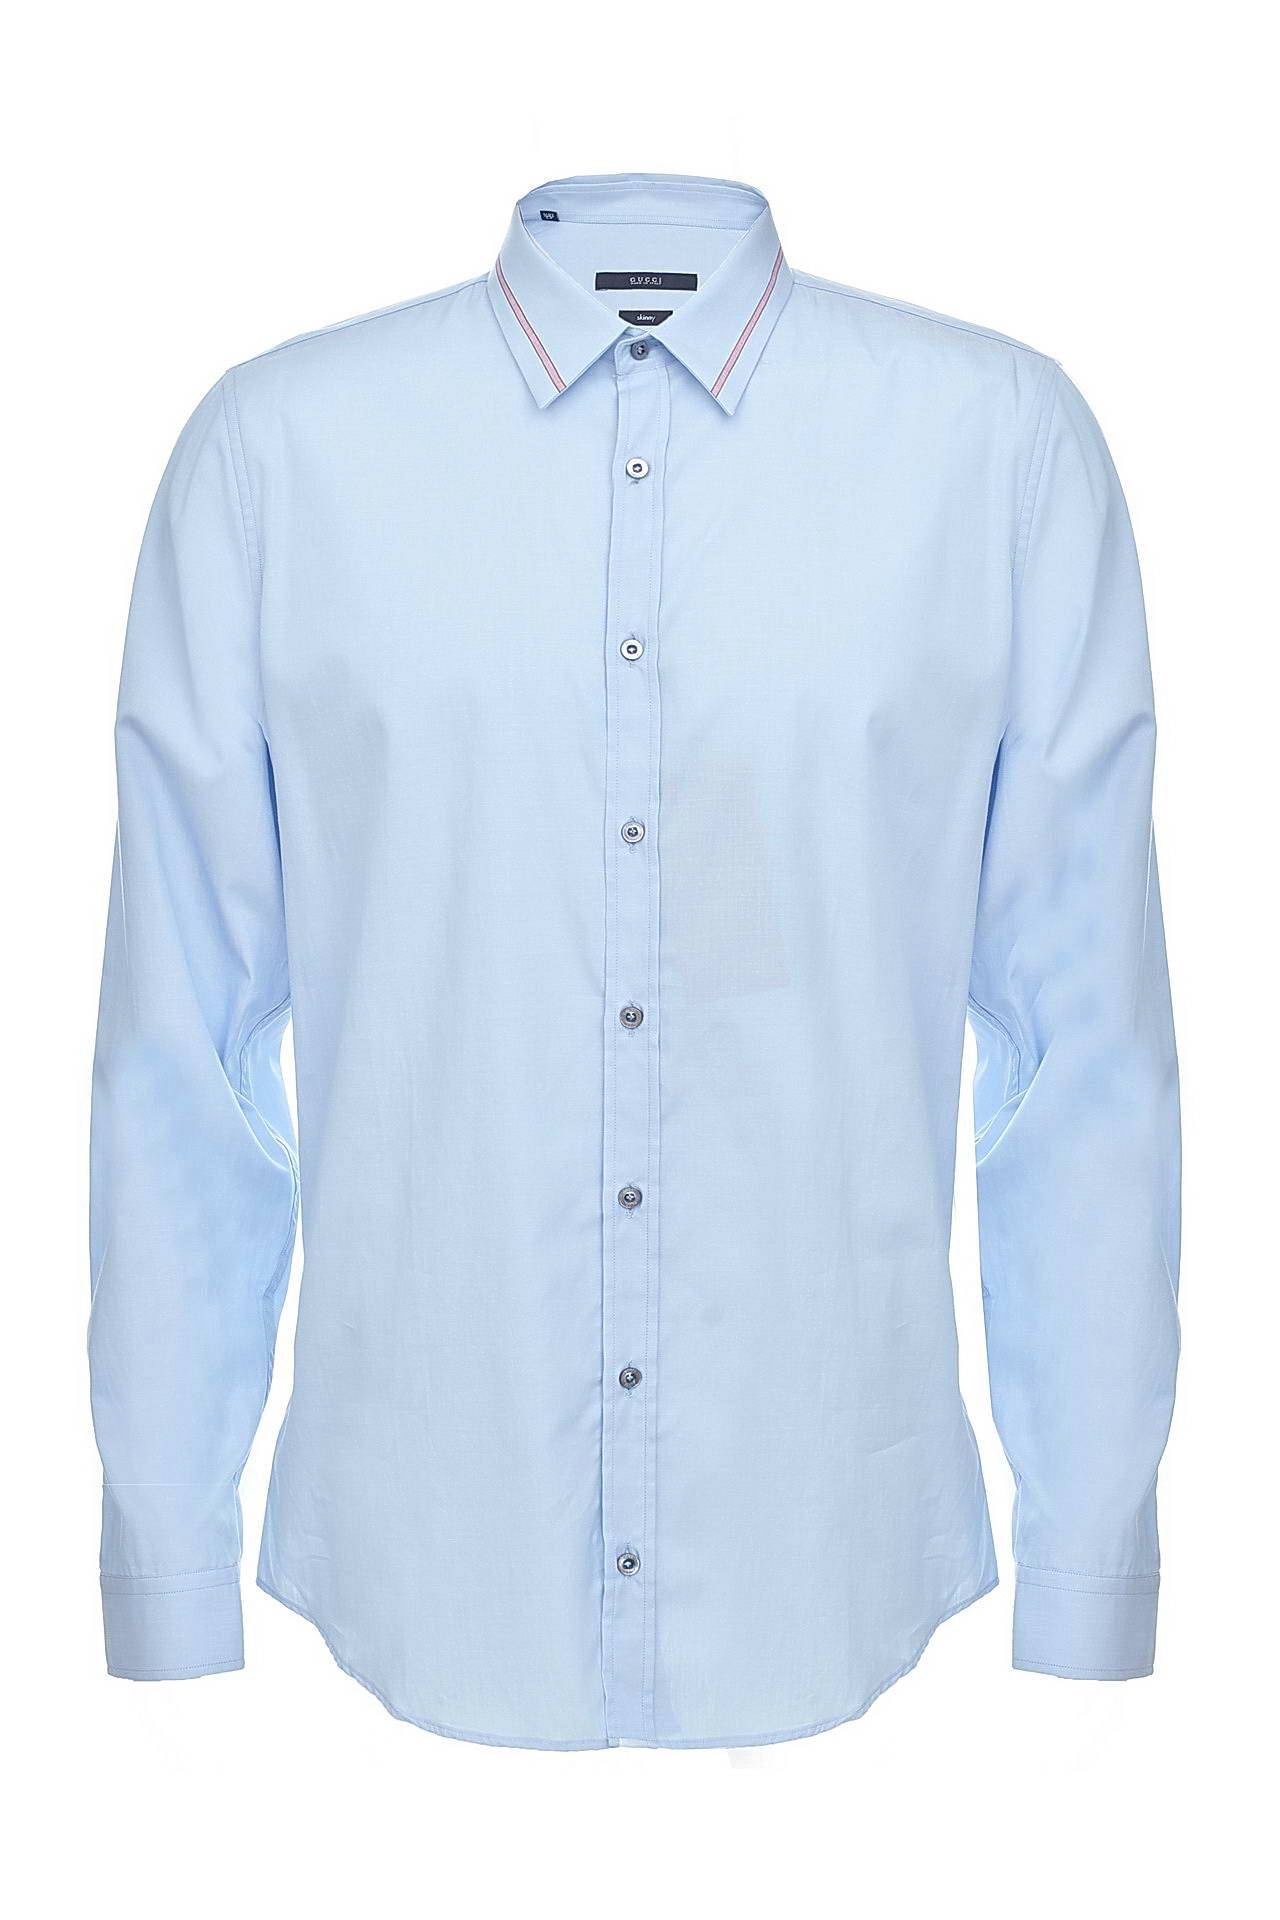 Одежда мужская Рубашка GUCCI (307641Z3493/14.2). Купить за 12750 руб.